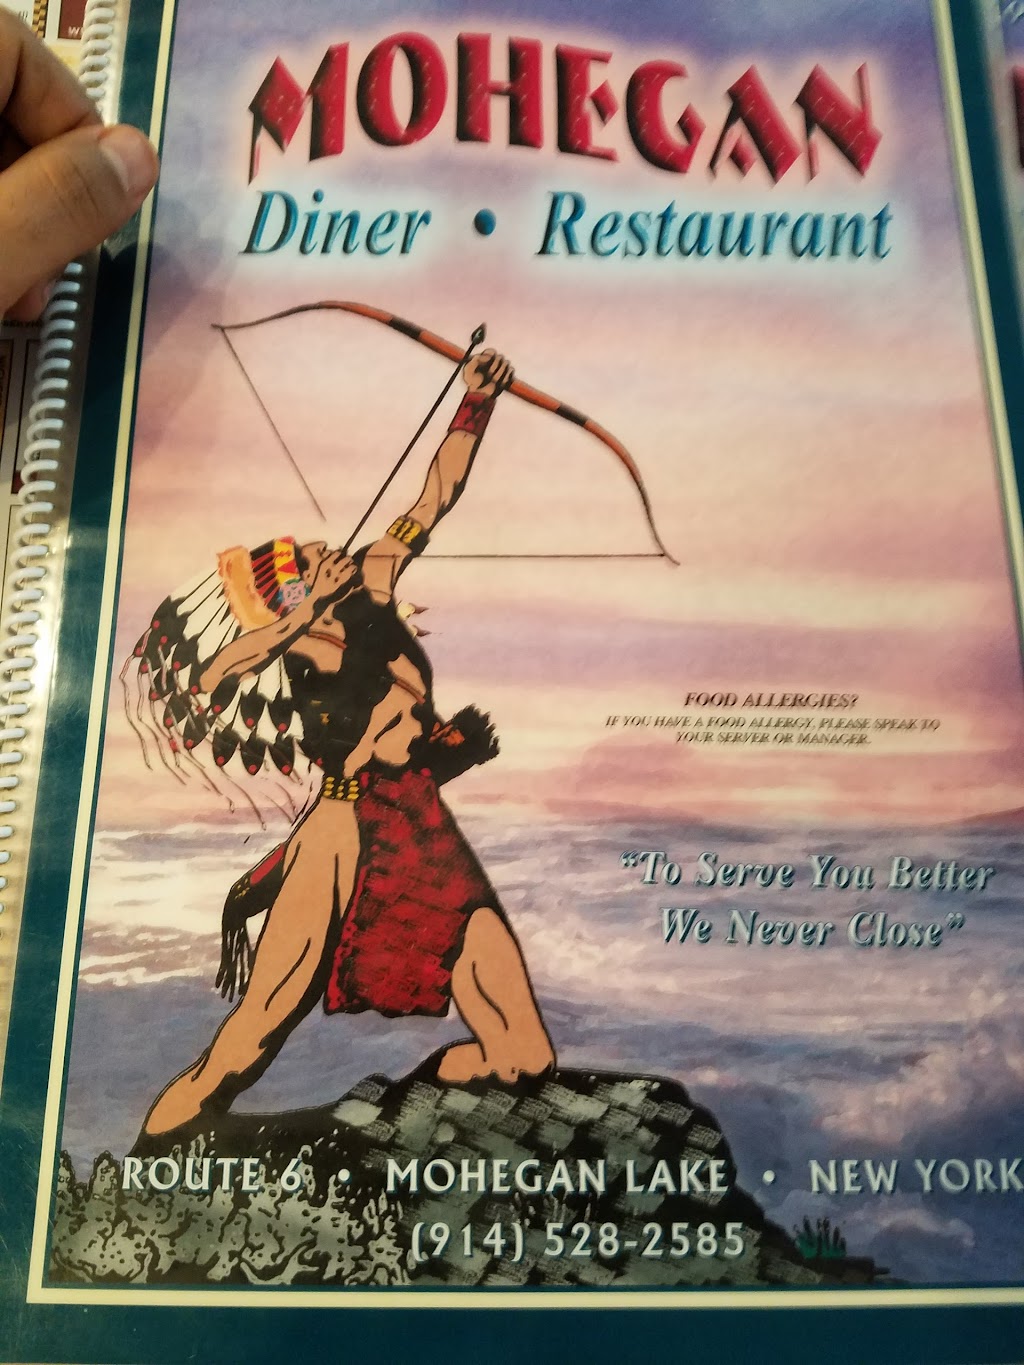 Mohegan Diner | 1880 E Main St, Mohegan Lake, NY 10547 | Phone: (914) 528-2585